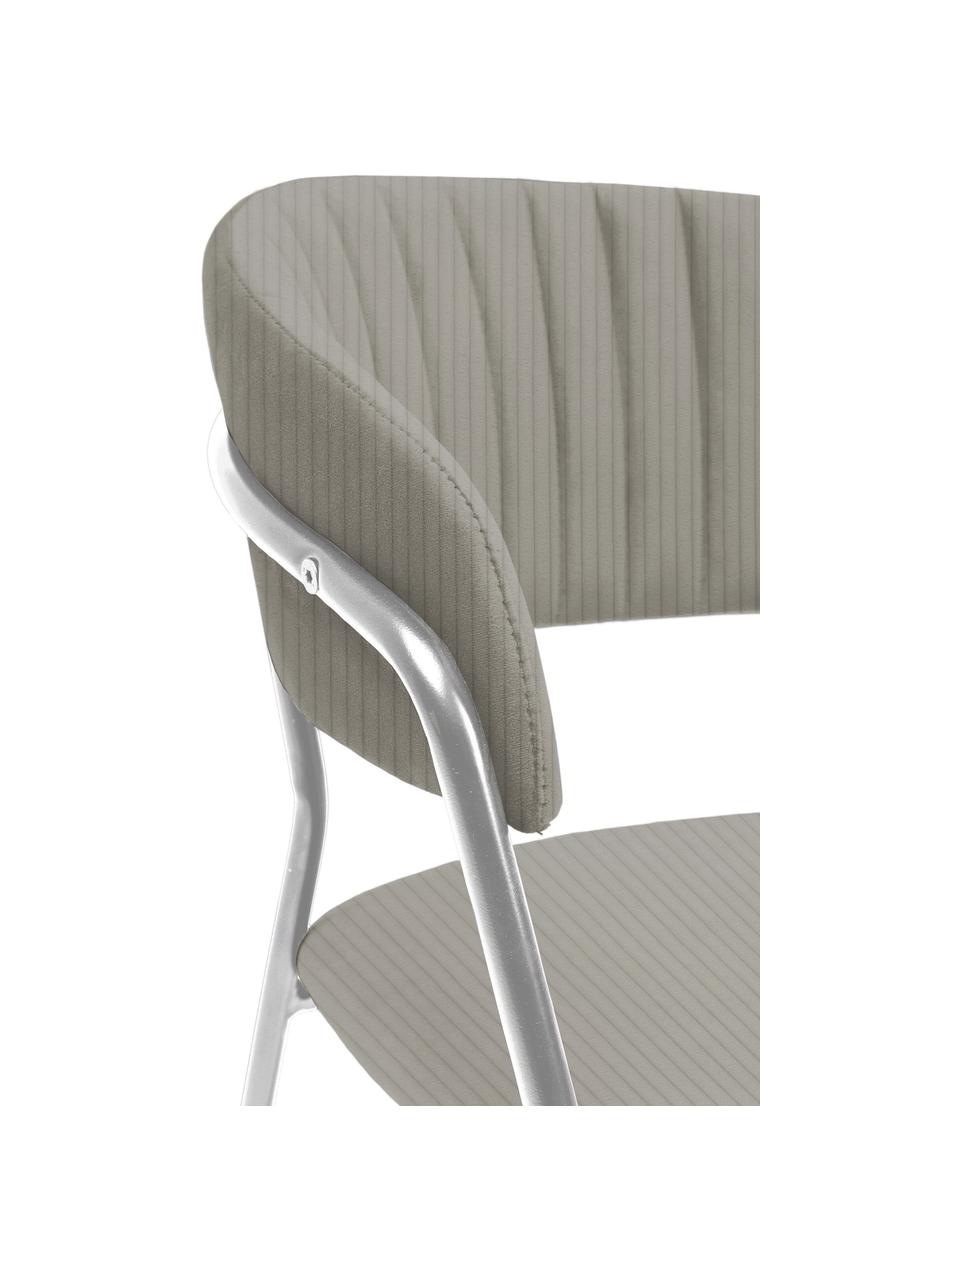 Fluwelen stoelen Belle, 2 stuks, Bekleding: fluweel (100% polyester) , Frame: gepoedercoat staal, Fluweel grijs, chroomkleurig, B 57 x H 54 cm